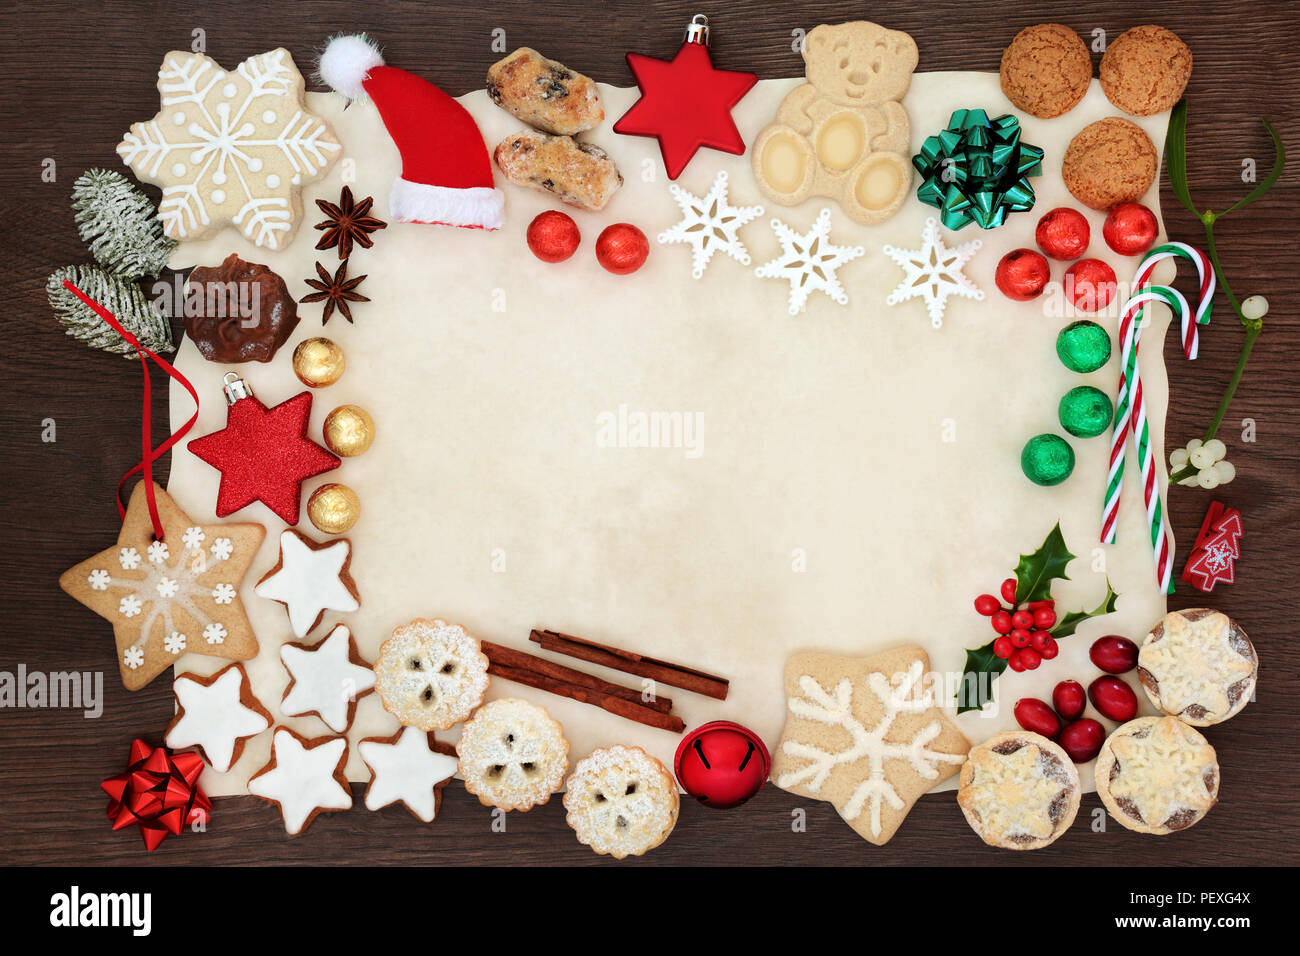 Weihnachten festliche Hintergrund Grenze einschließlich Christbaumschmuck,  Kekse, Kuchen, Schokolade, Gewürze und Winter Flora auf Pergamentpapier auf  Eiche rustikal Stockfotografie - Alamy